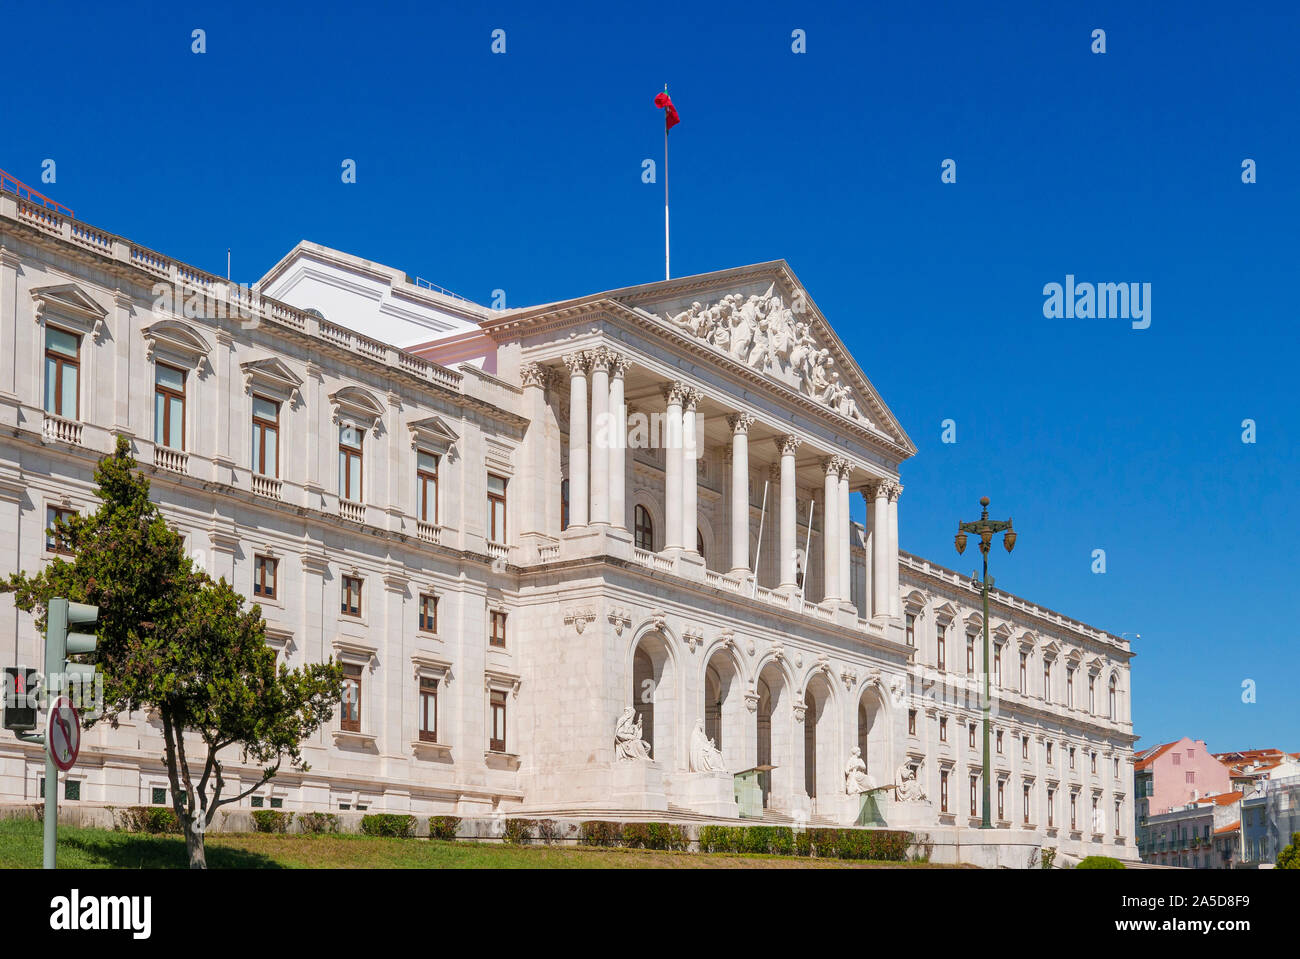 The Portuguese Parliament building Assembleia da República aka São Bento Palace in Lisbon, Portugal, Europe Stock Photo